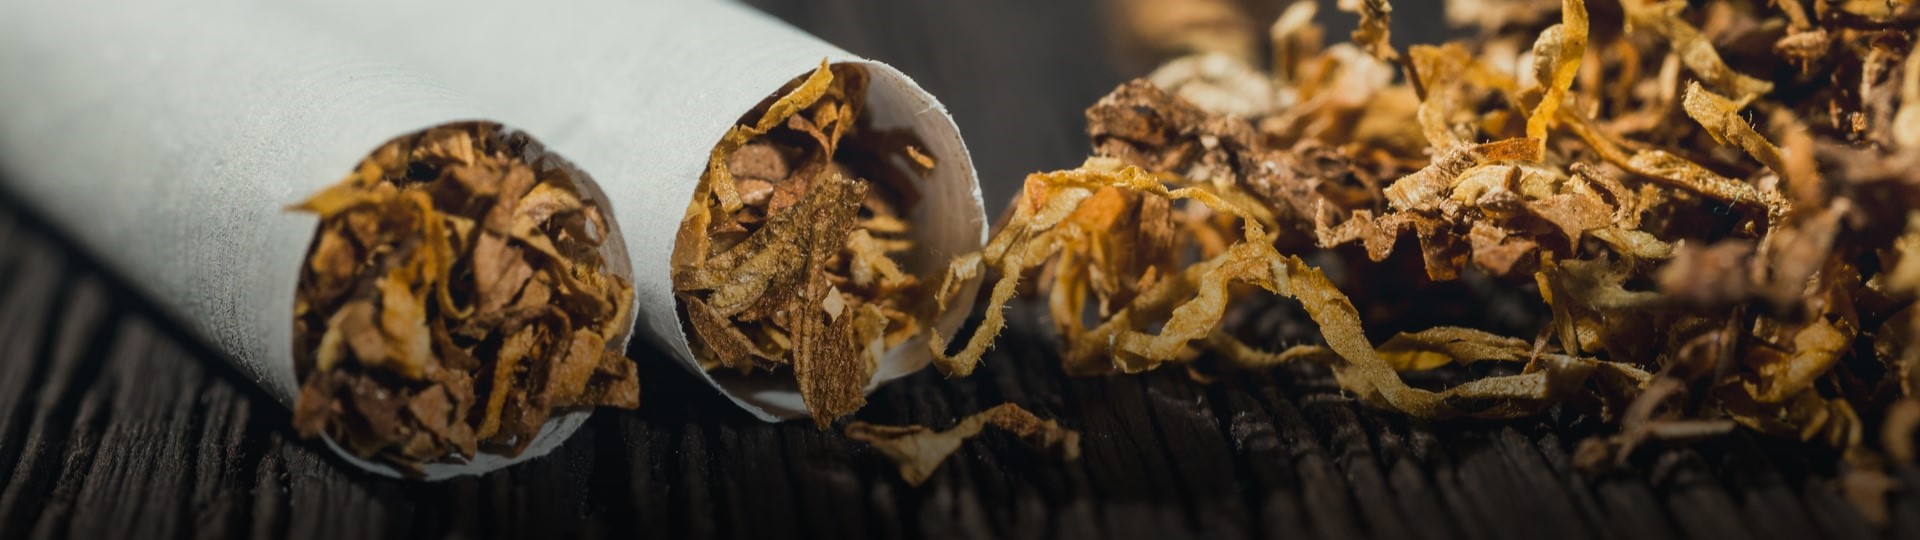 Řezaný tabák skokově zdraží. Lidé začnou nakupovat v zahraničí